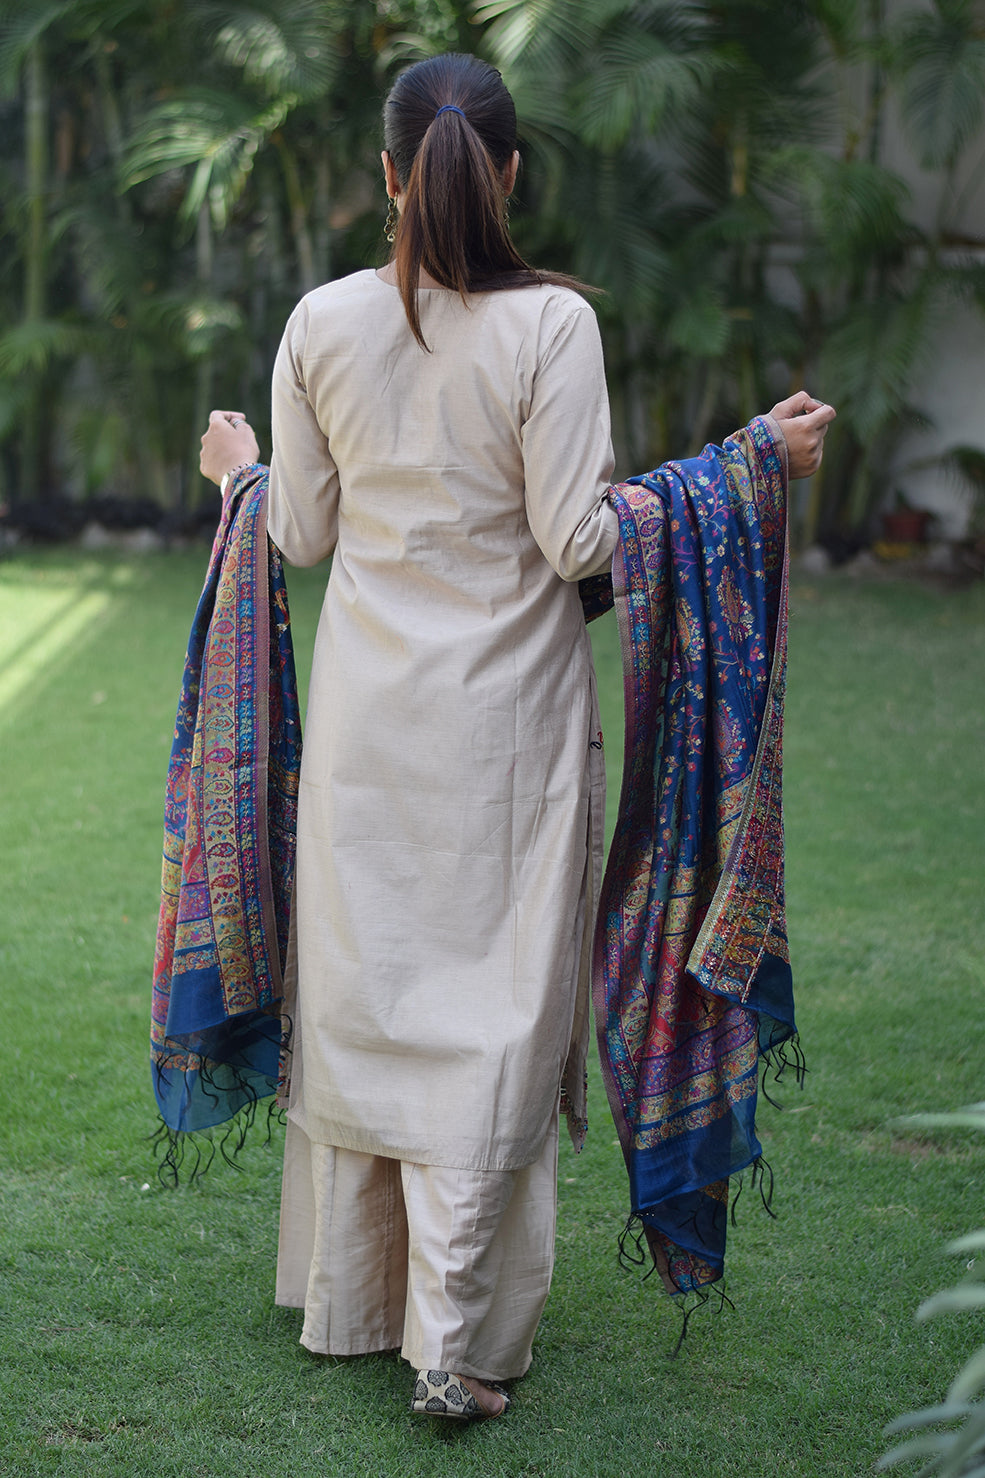 punjabi girl | Punjabi girls, Punjabi fashion, Indian wear